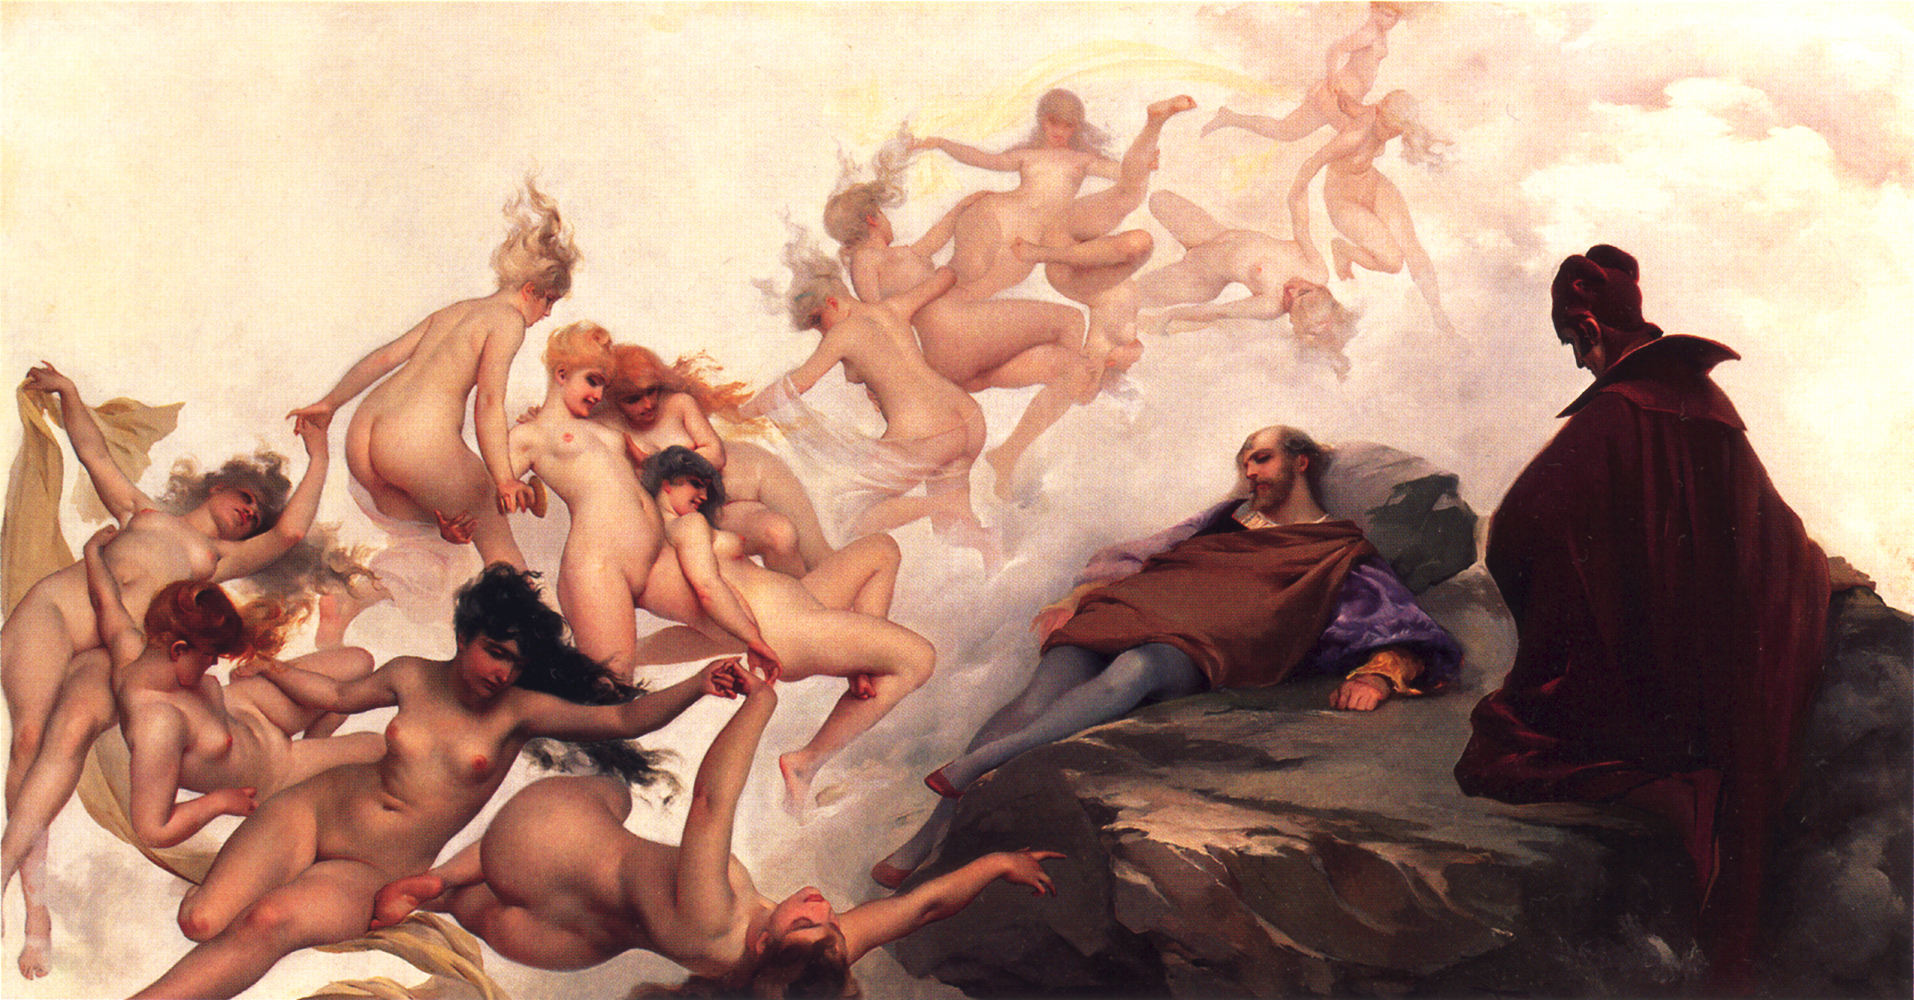 躍動する魔女の裸体～19世紀の画家ルイス・リカルド・ファレロ